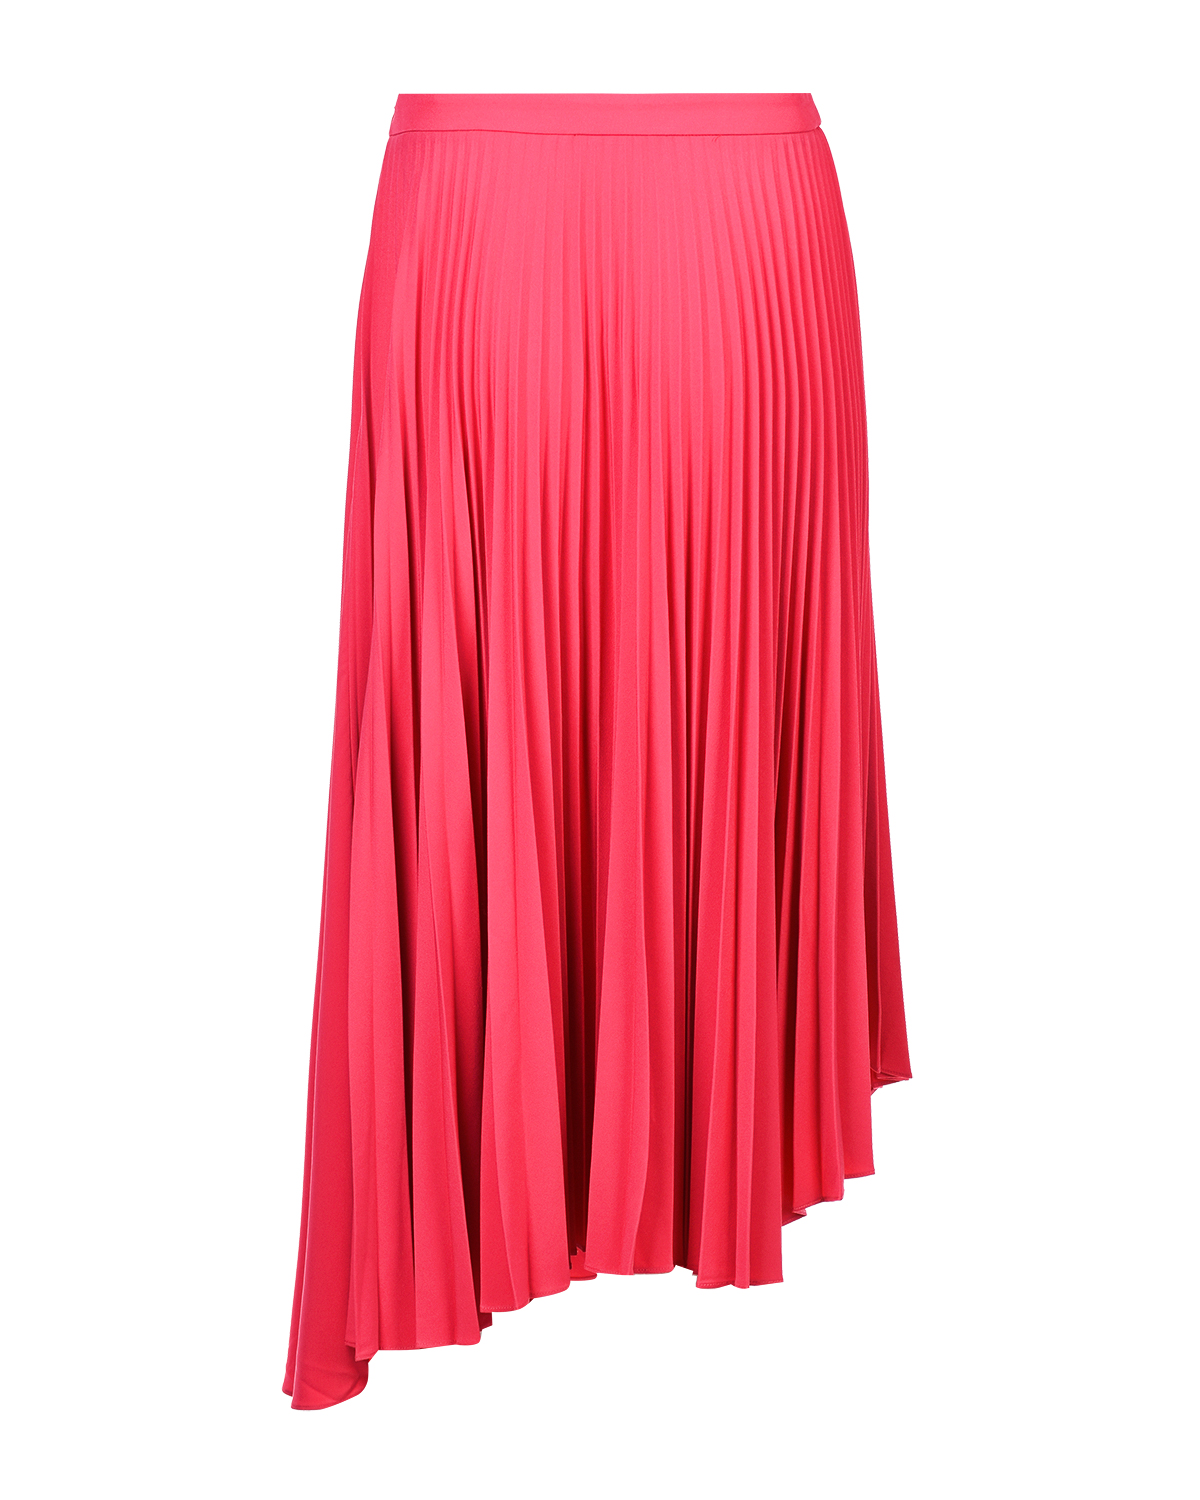 Плиссированная юбка цвета фуксии Markus Lupfer - фото 4